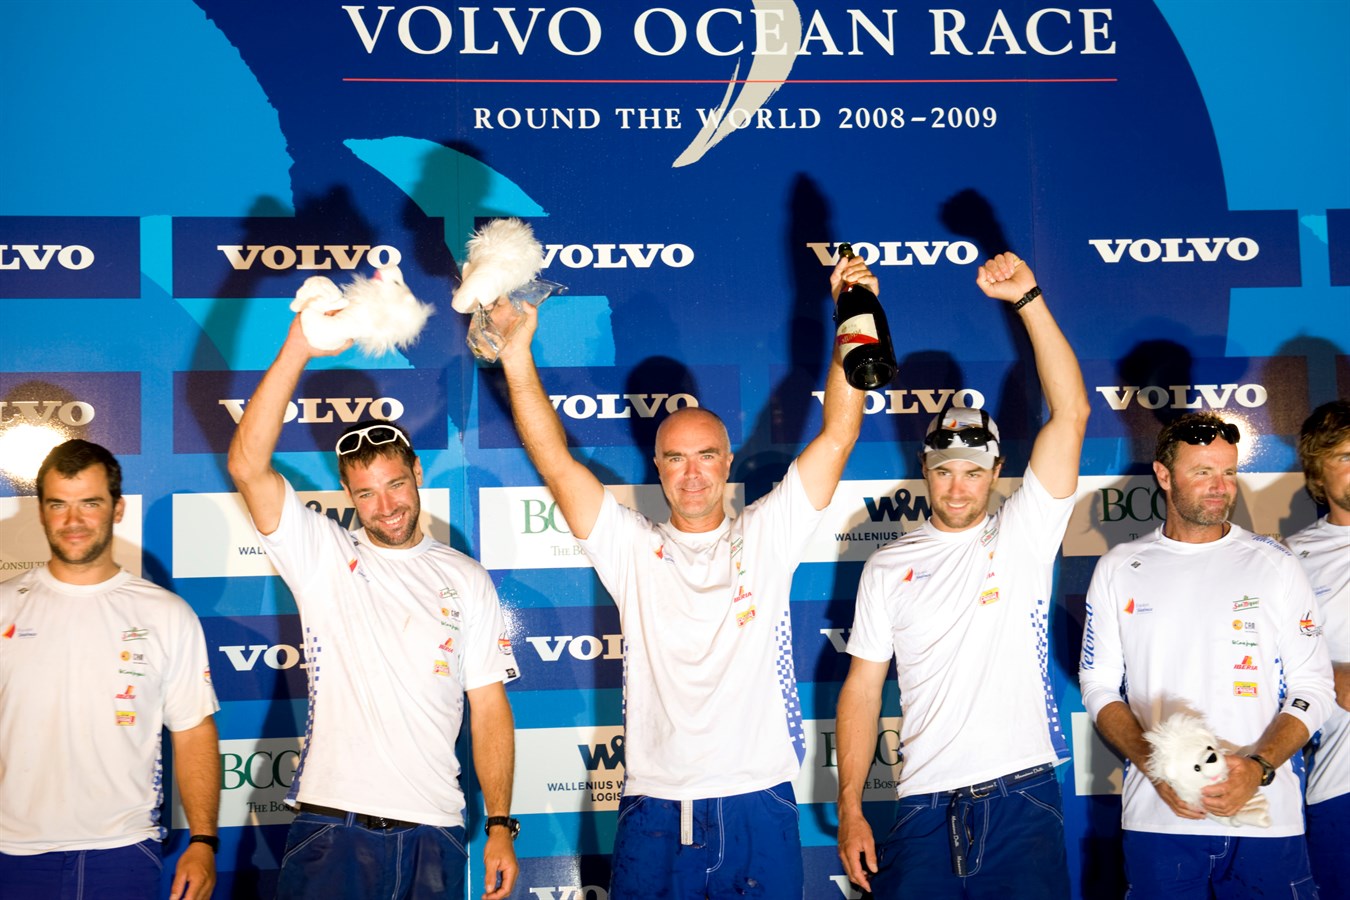 Volvo Ocean Race 2008-2009